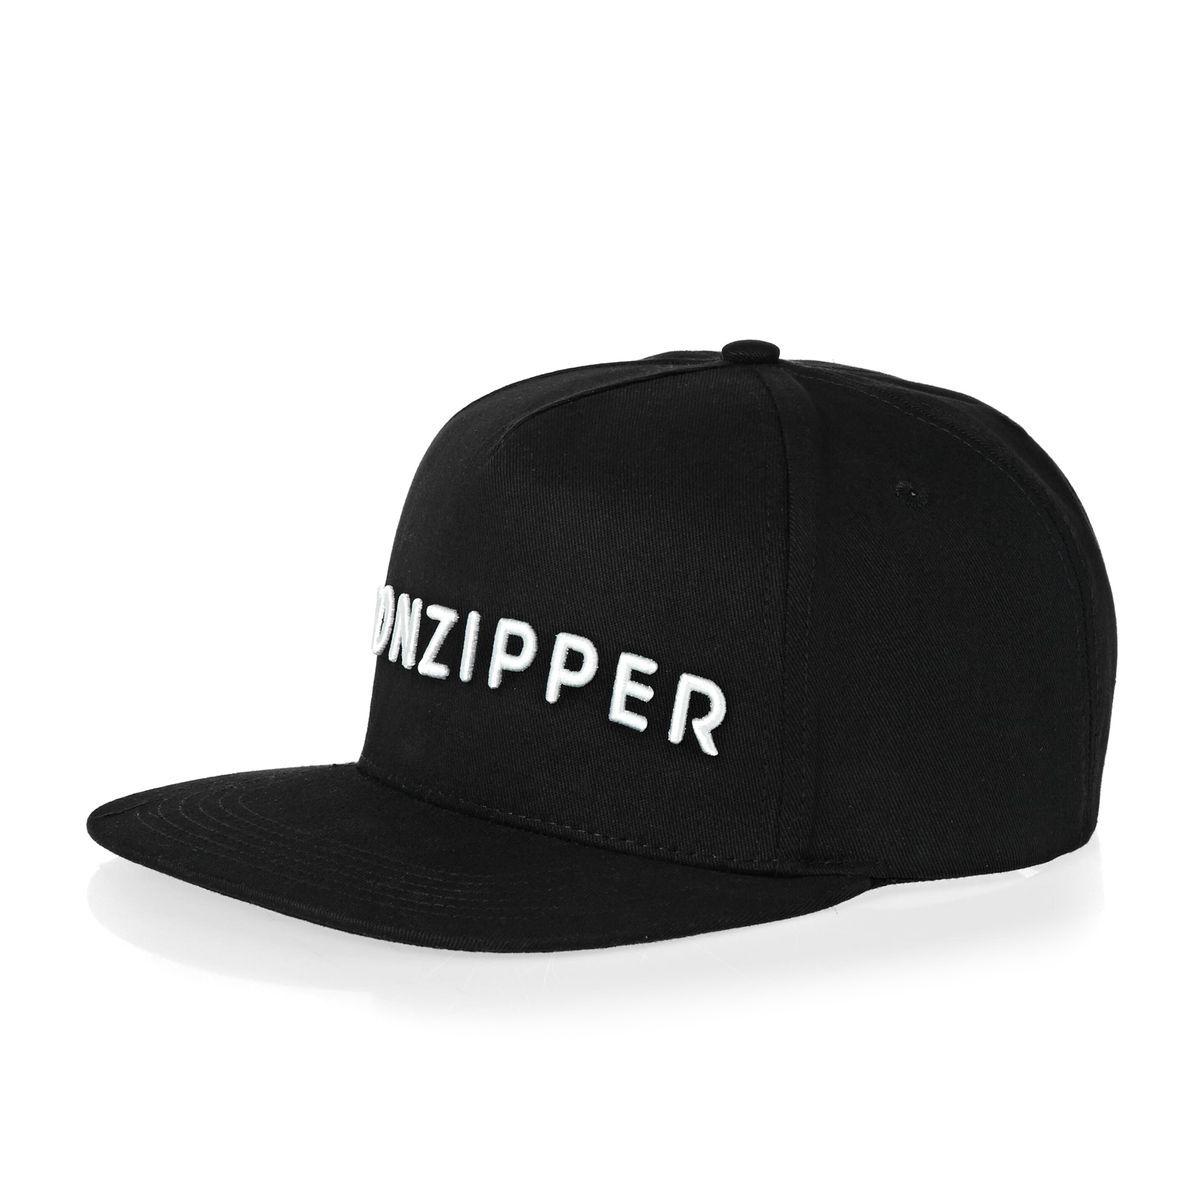 Von Zipper Logo - Von Zipper Cap - Von Zipper Logo Lettering Snap Back Cap - Black